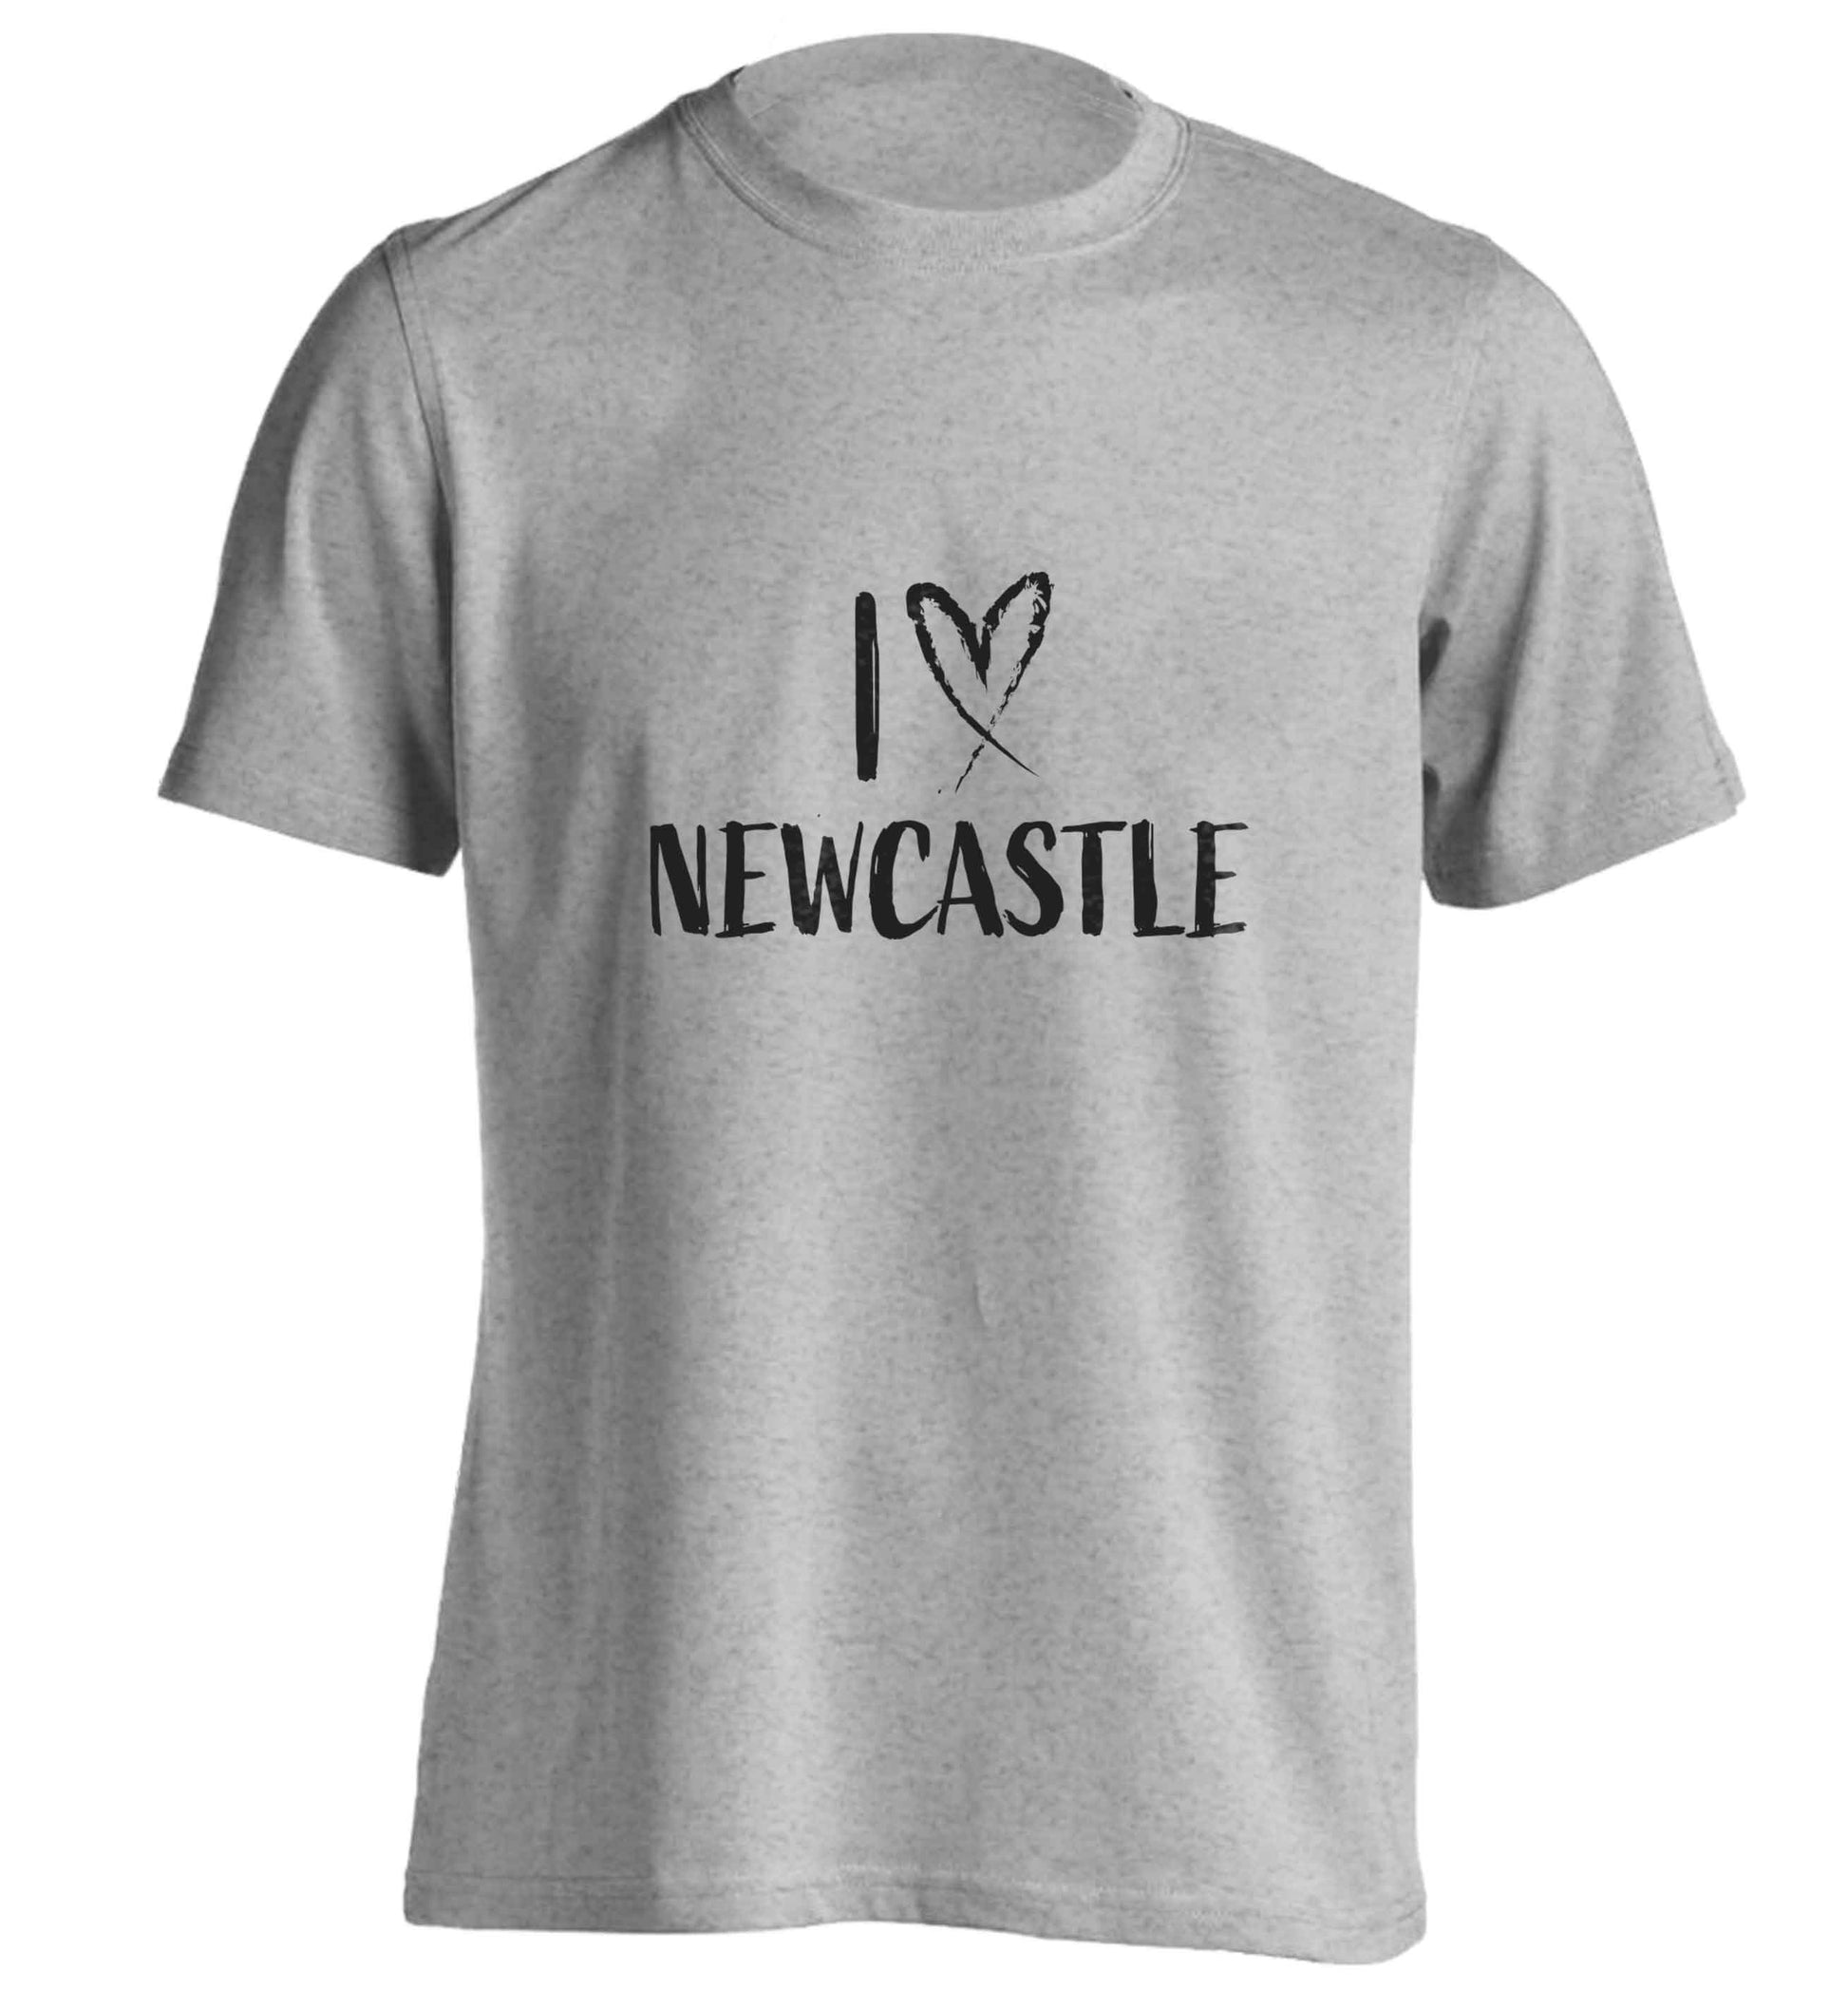 I love Newcastle adults unisex grey Tshirt 2XL